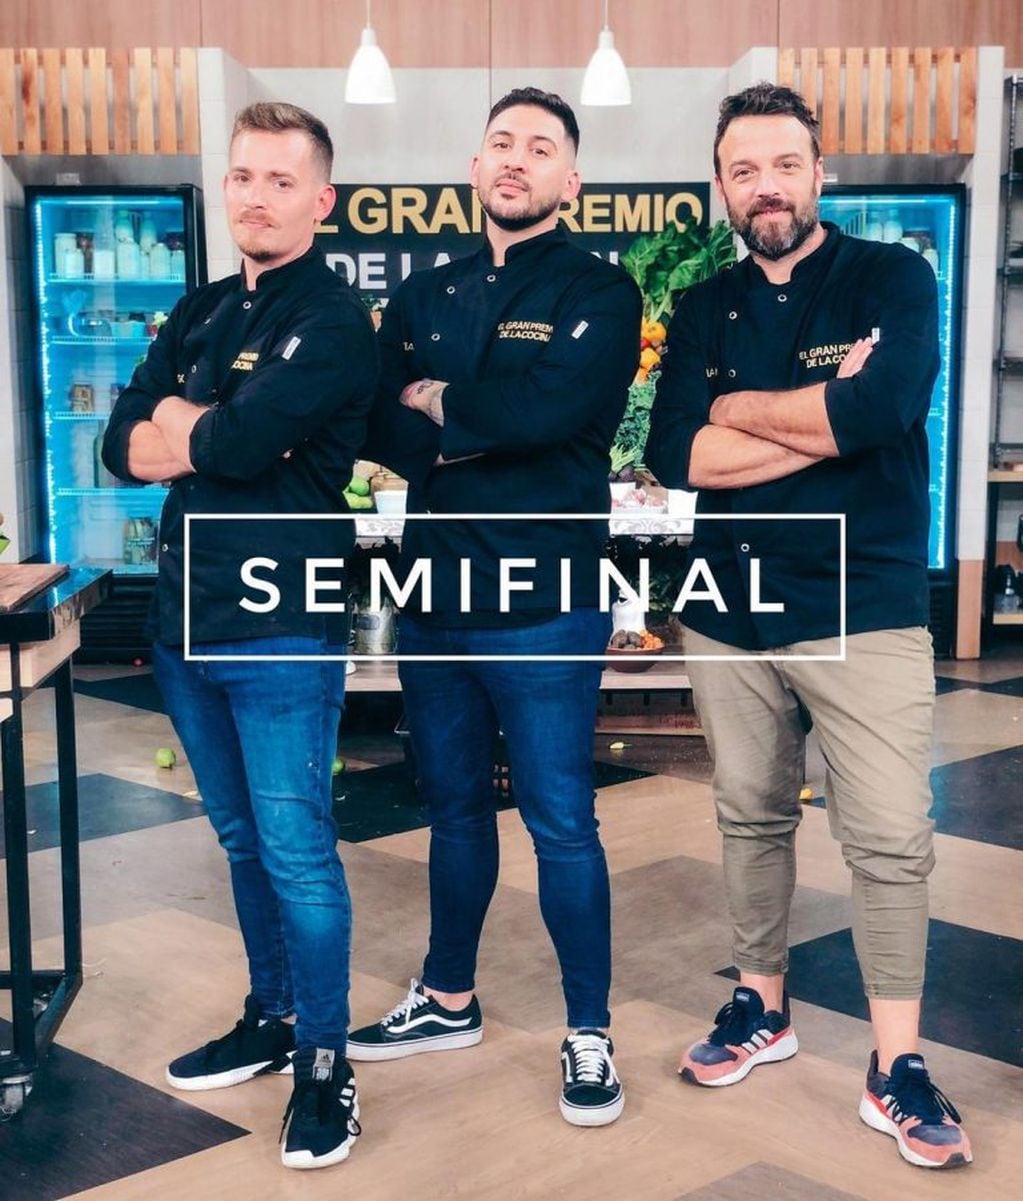 Finalistas del Gran premio de la cocina (Instagram)